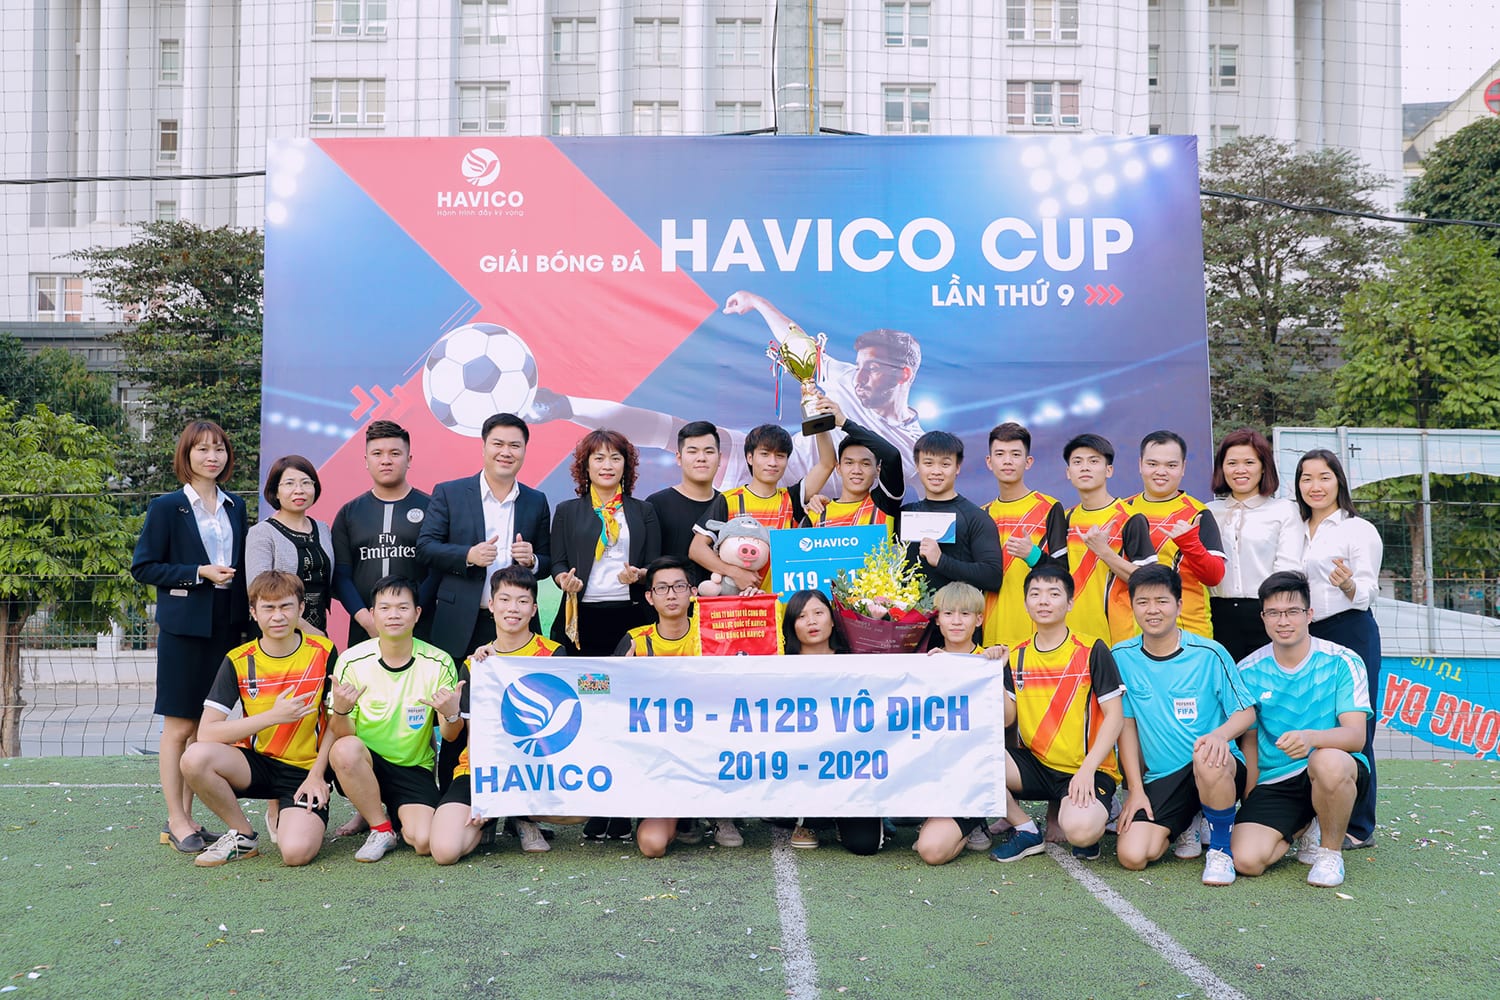 Bế mạc giải bóng đá HAVICO CUP lần thứ 9